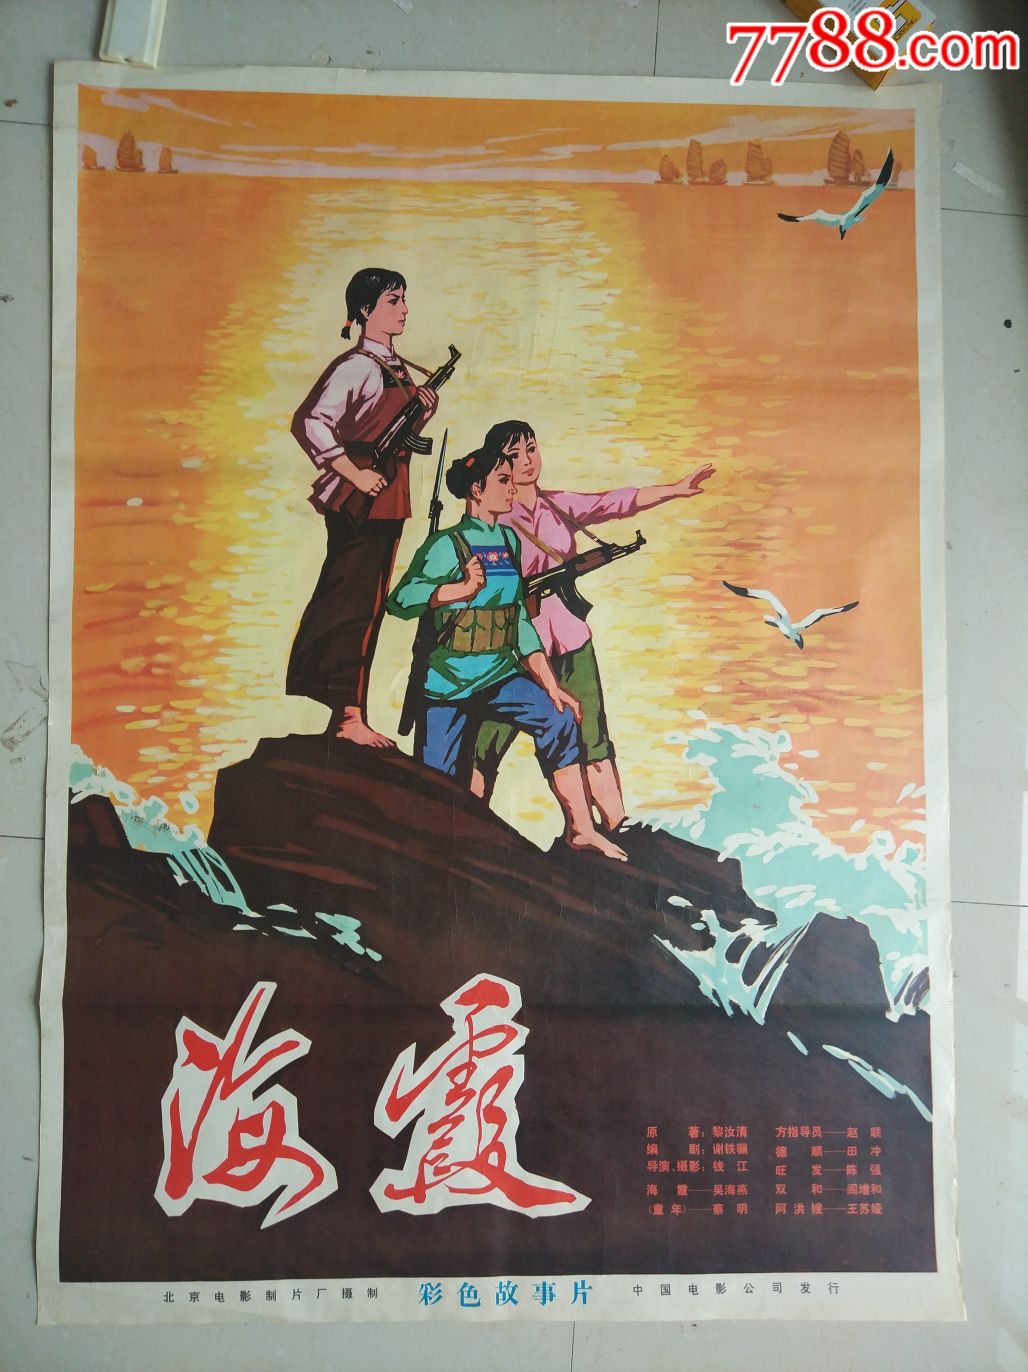 海霞-电影海报-7788收藏